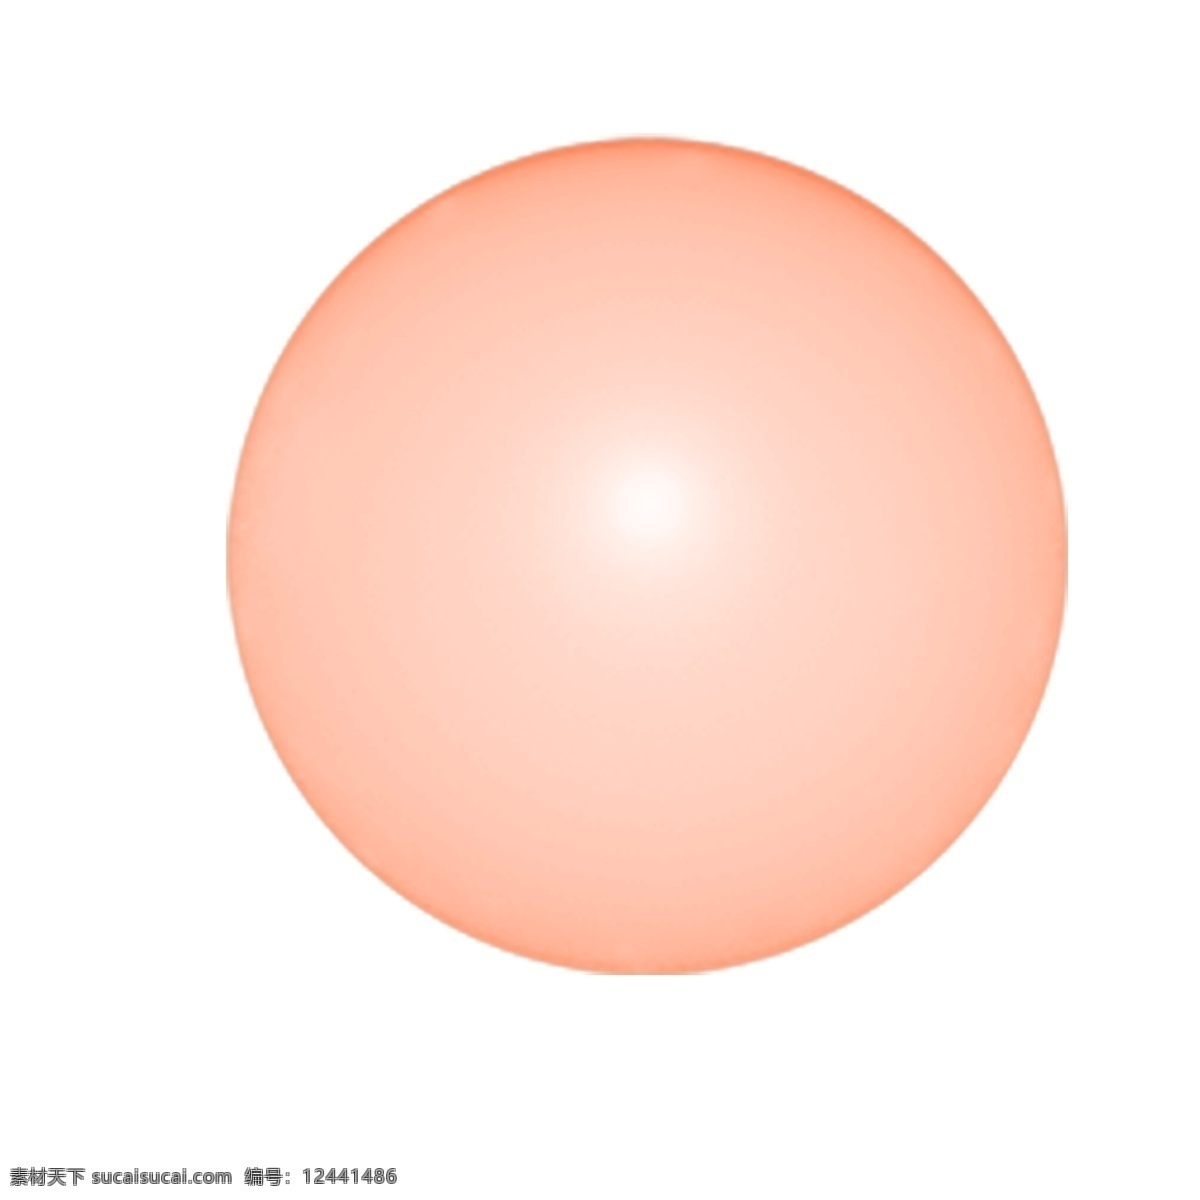 红色 圆球 免 抠 图 几何形状 卡通图案 卡通插画 圆圆的球 球面 3d圆球 红色的圆球 免抠图